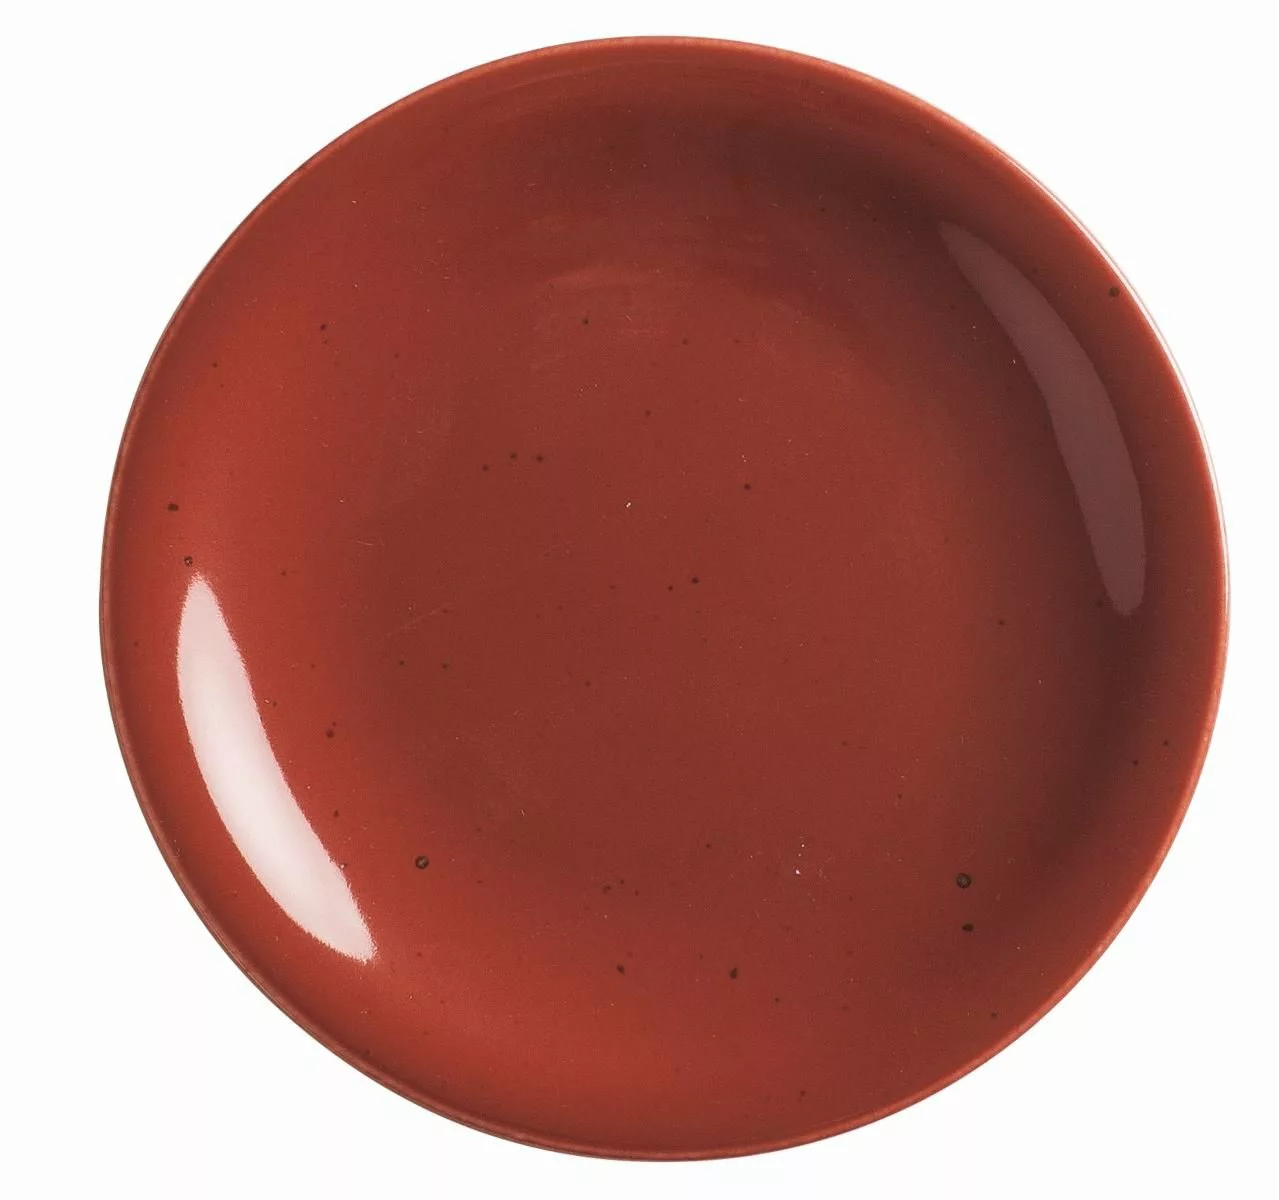 KAHLA siena red Homestyle siena red Brotteller 16 cm (rot) günstig online kaufen